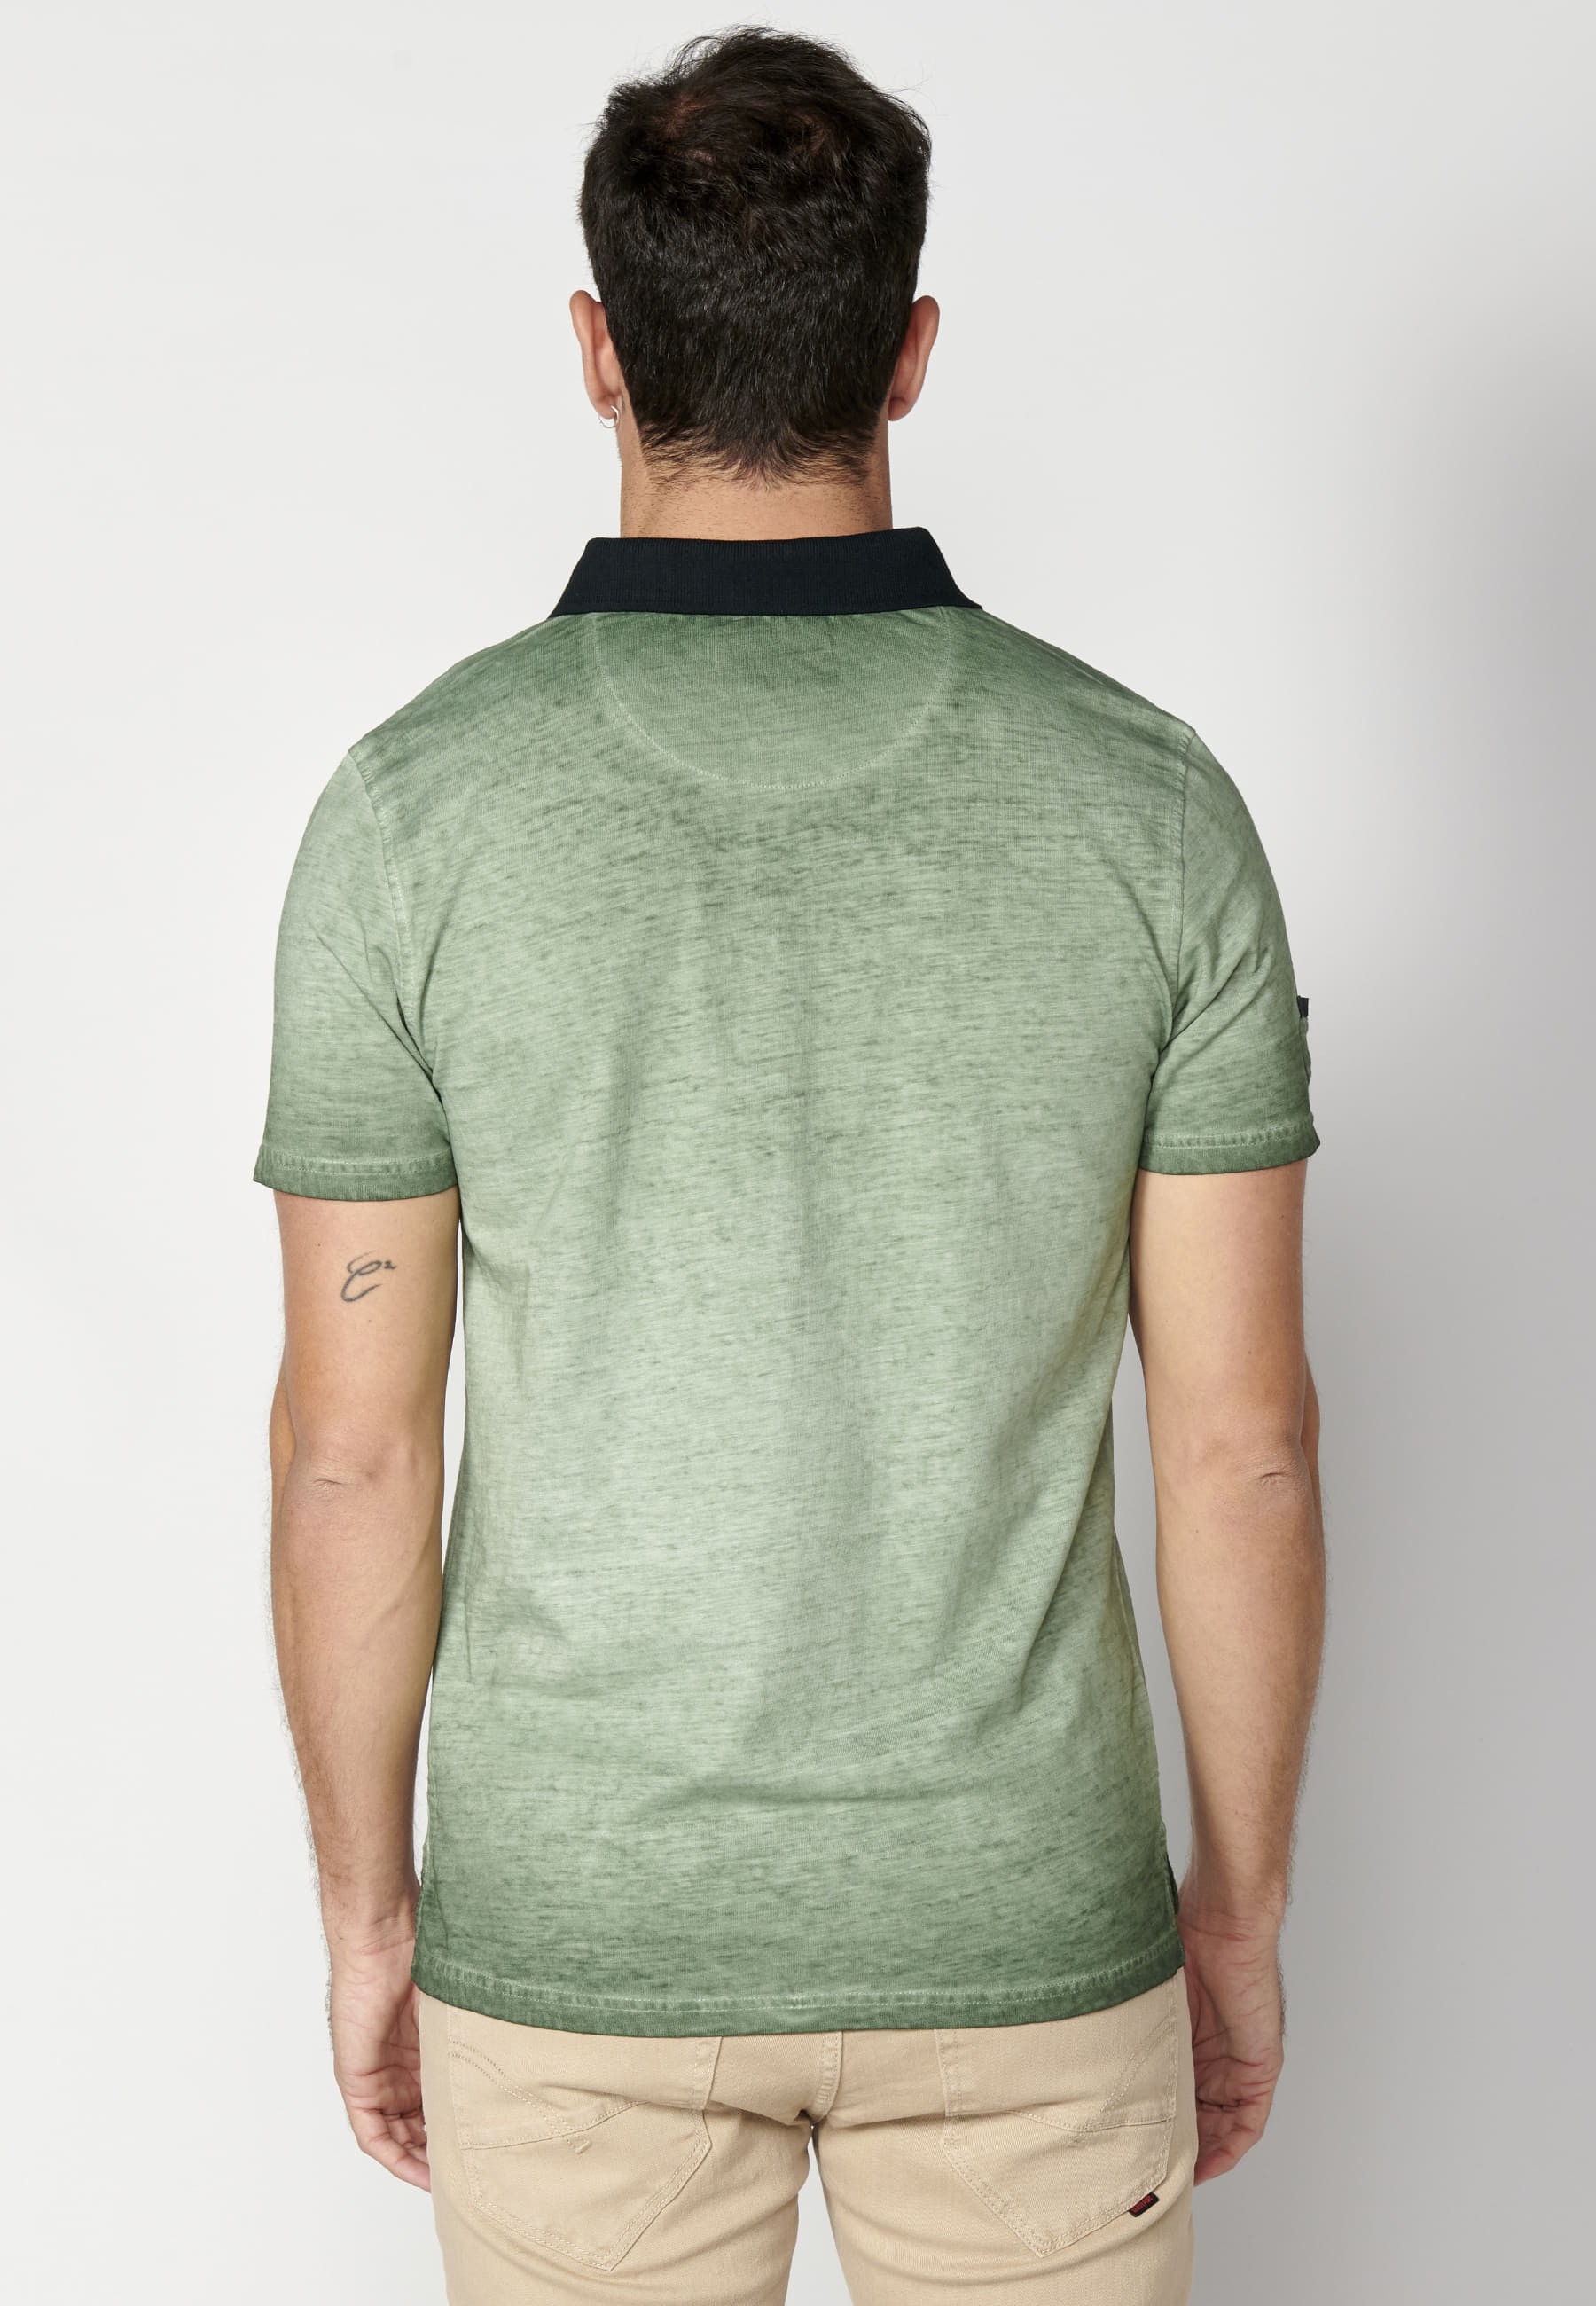 Khakifarbenes Kurzarm-Poloshirt aus Baumwolle mit Textdruck für Herren